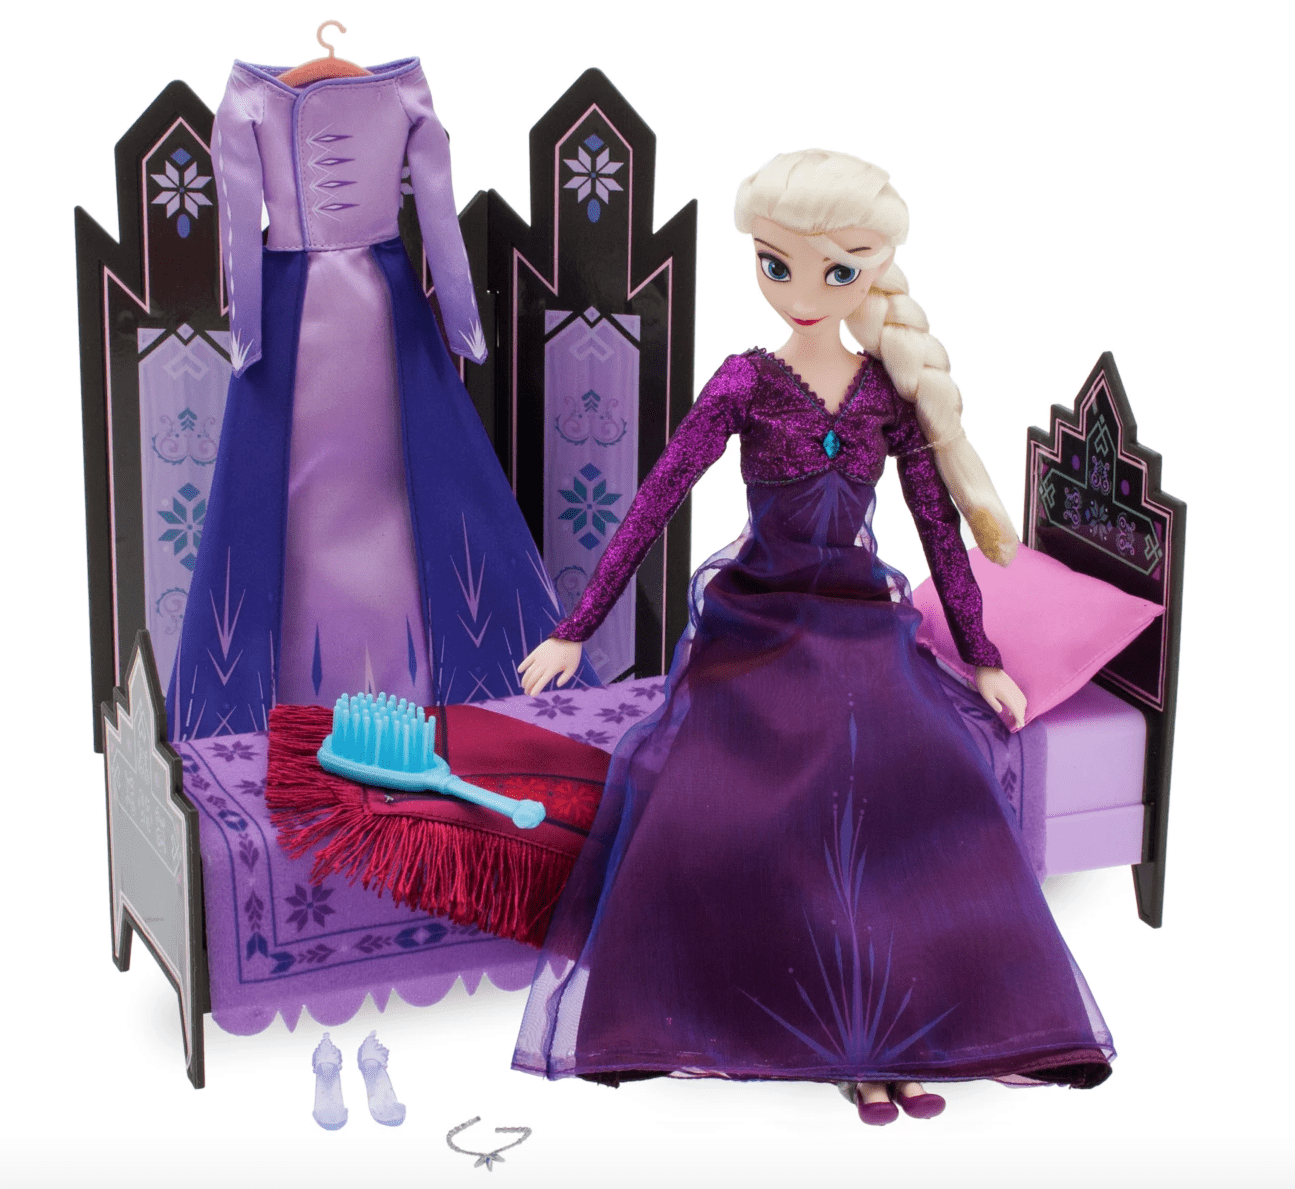 Disney Store Frozen 2 Elsa Classic Doll Bedroom Deluxe Play Set -  